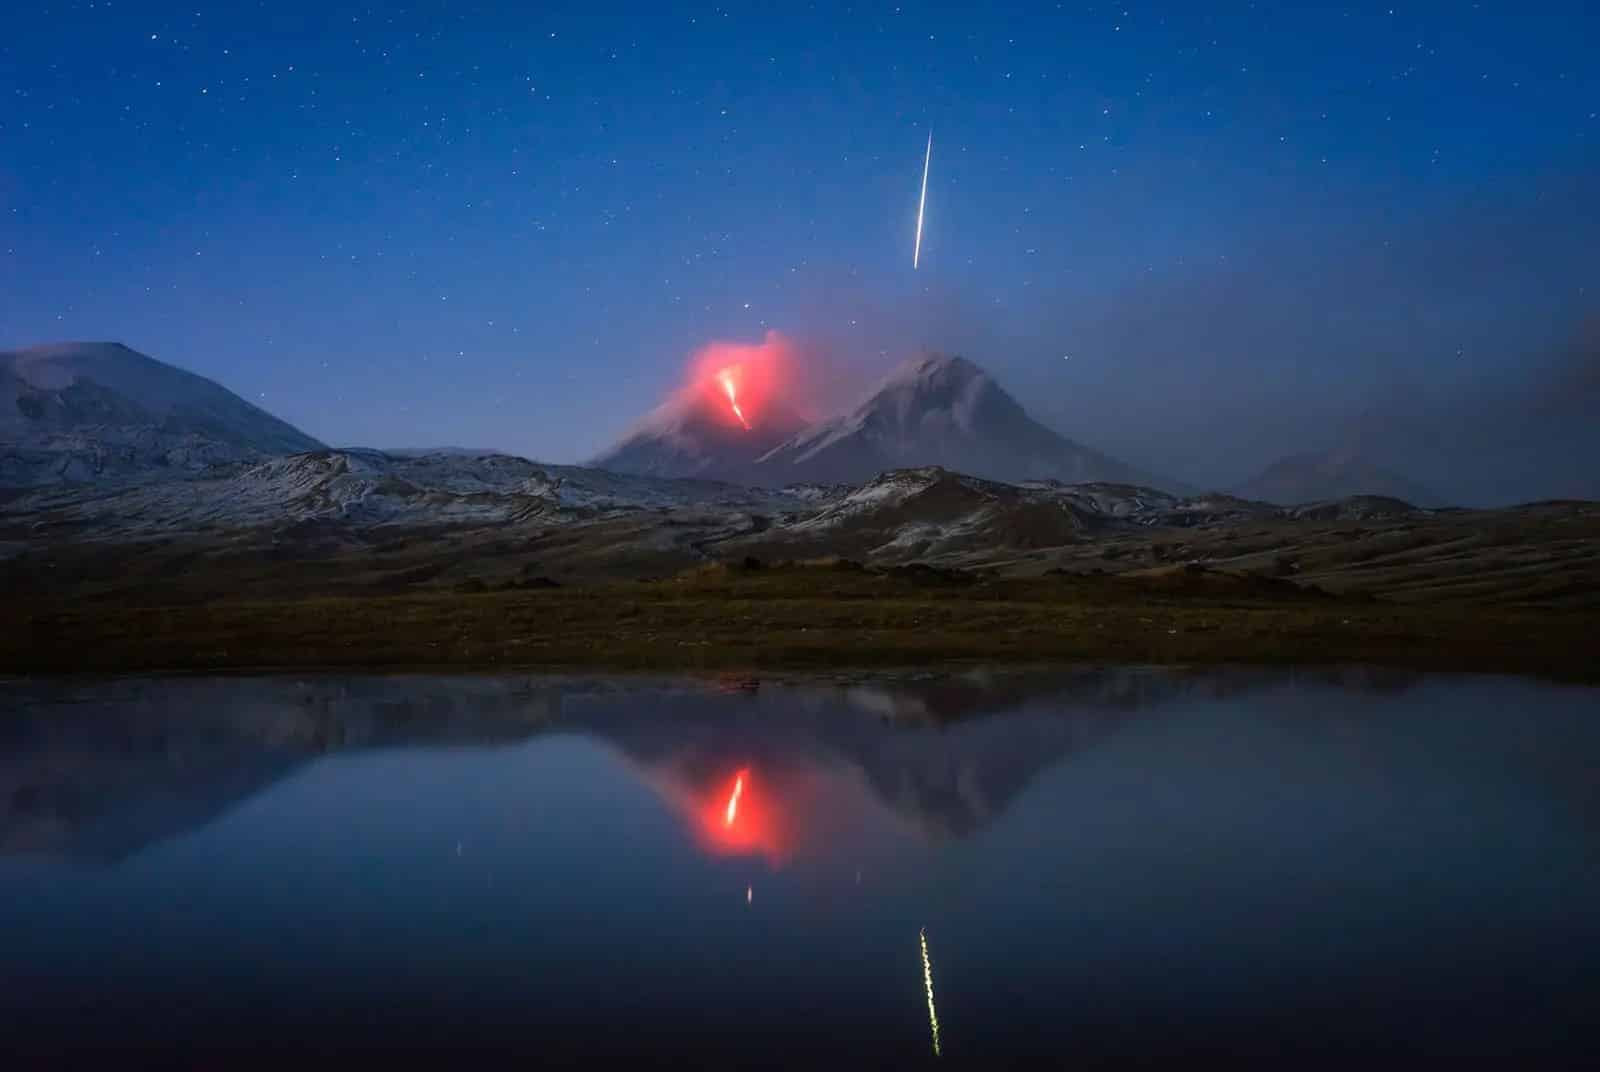 NAG bắt được khoảnh khắc sao băng bay qua khi đang chụp núi lửa